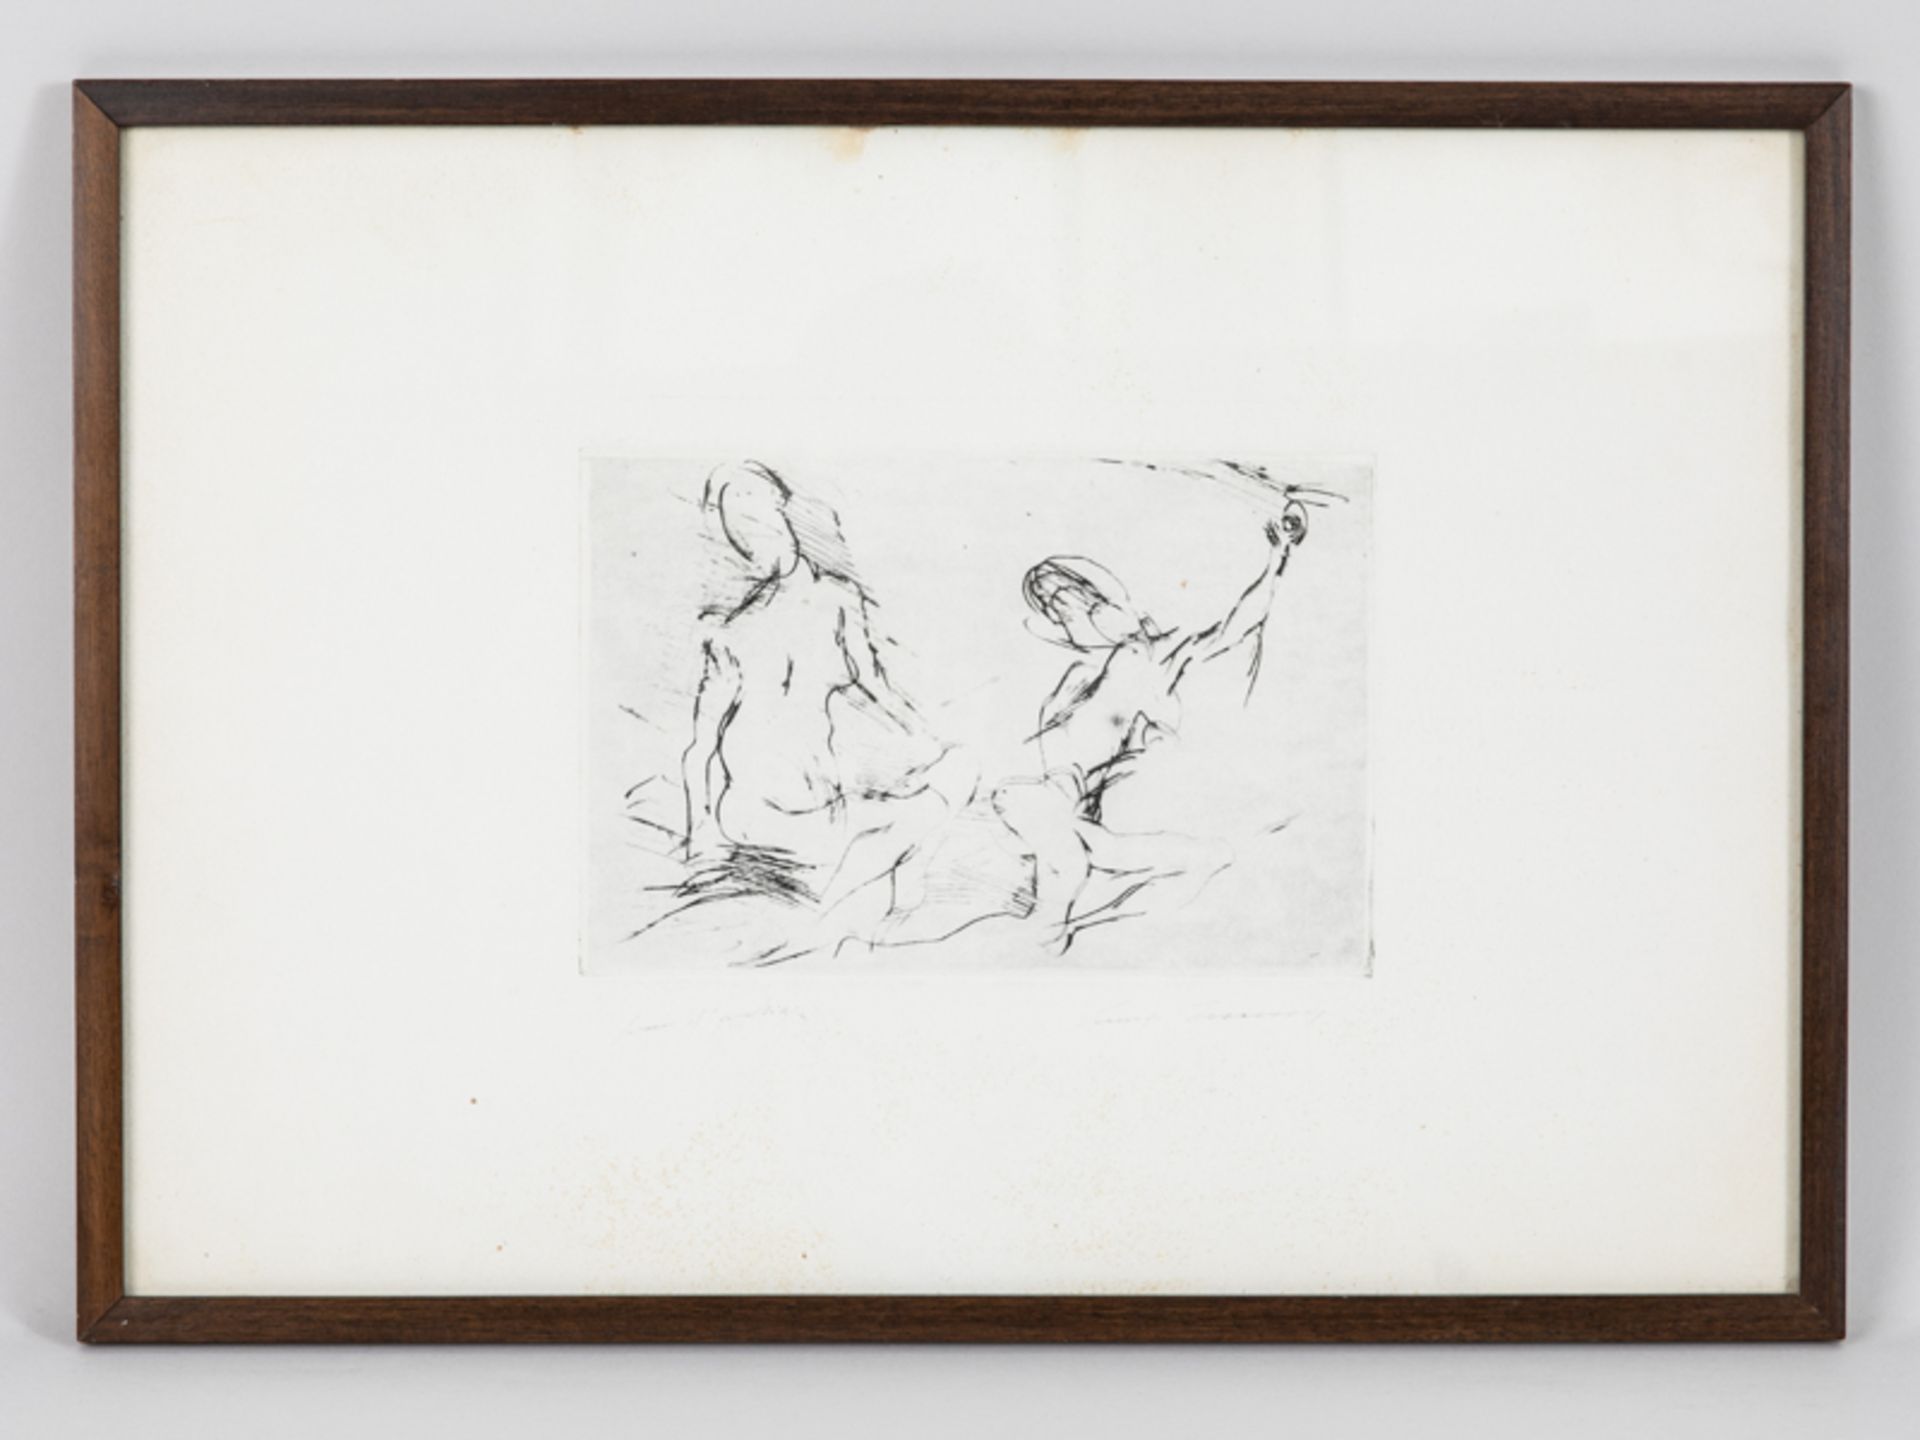 Unbekannter Lithograph, 20. Jahrhundert. "Zwei weibliche Akte", skizzenhaft abstrahierte Darste